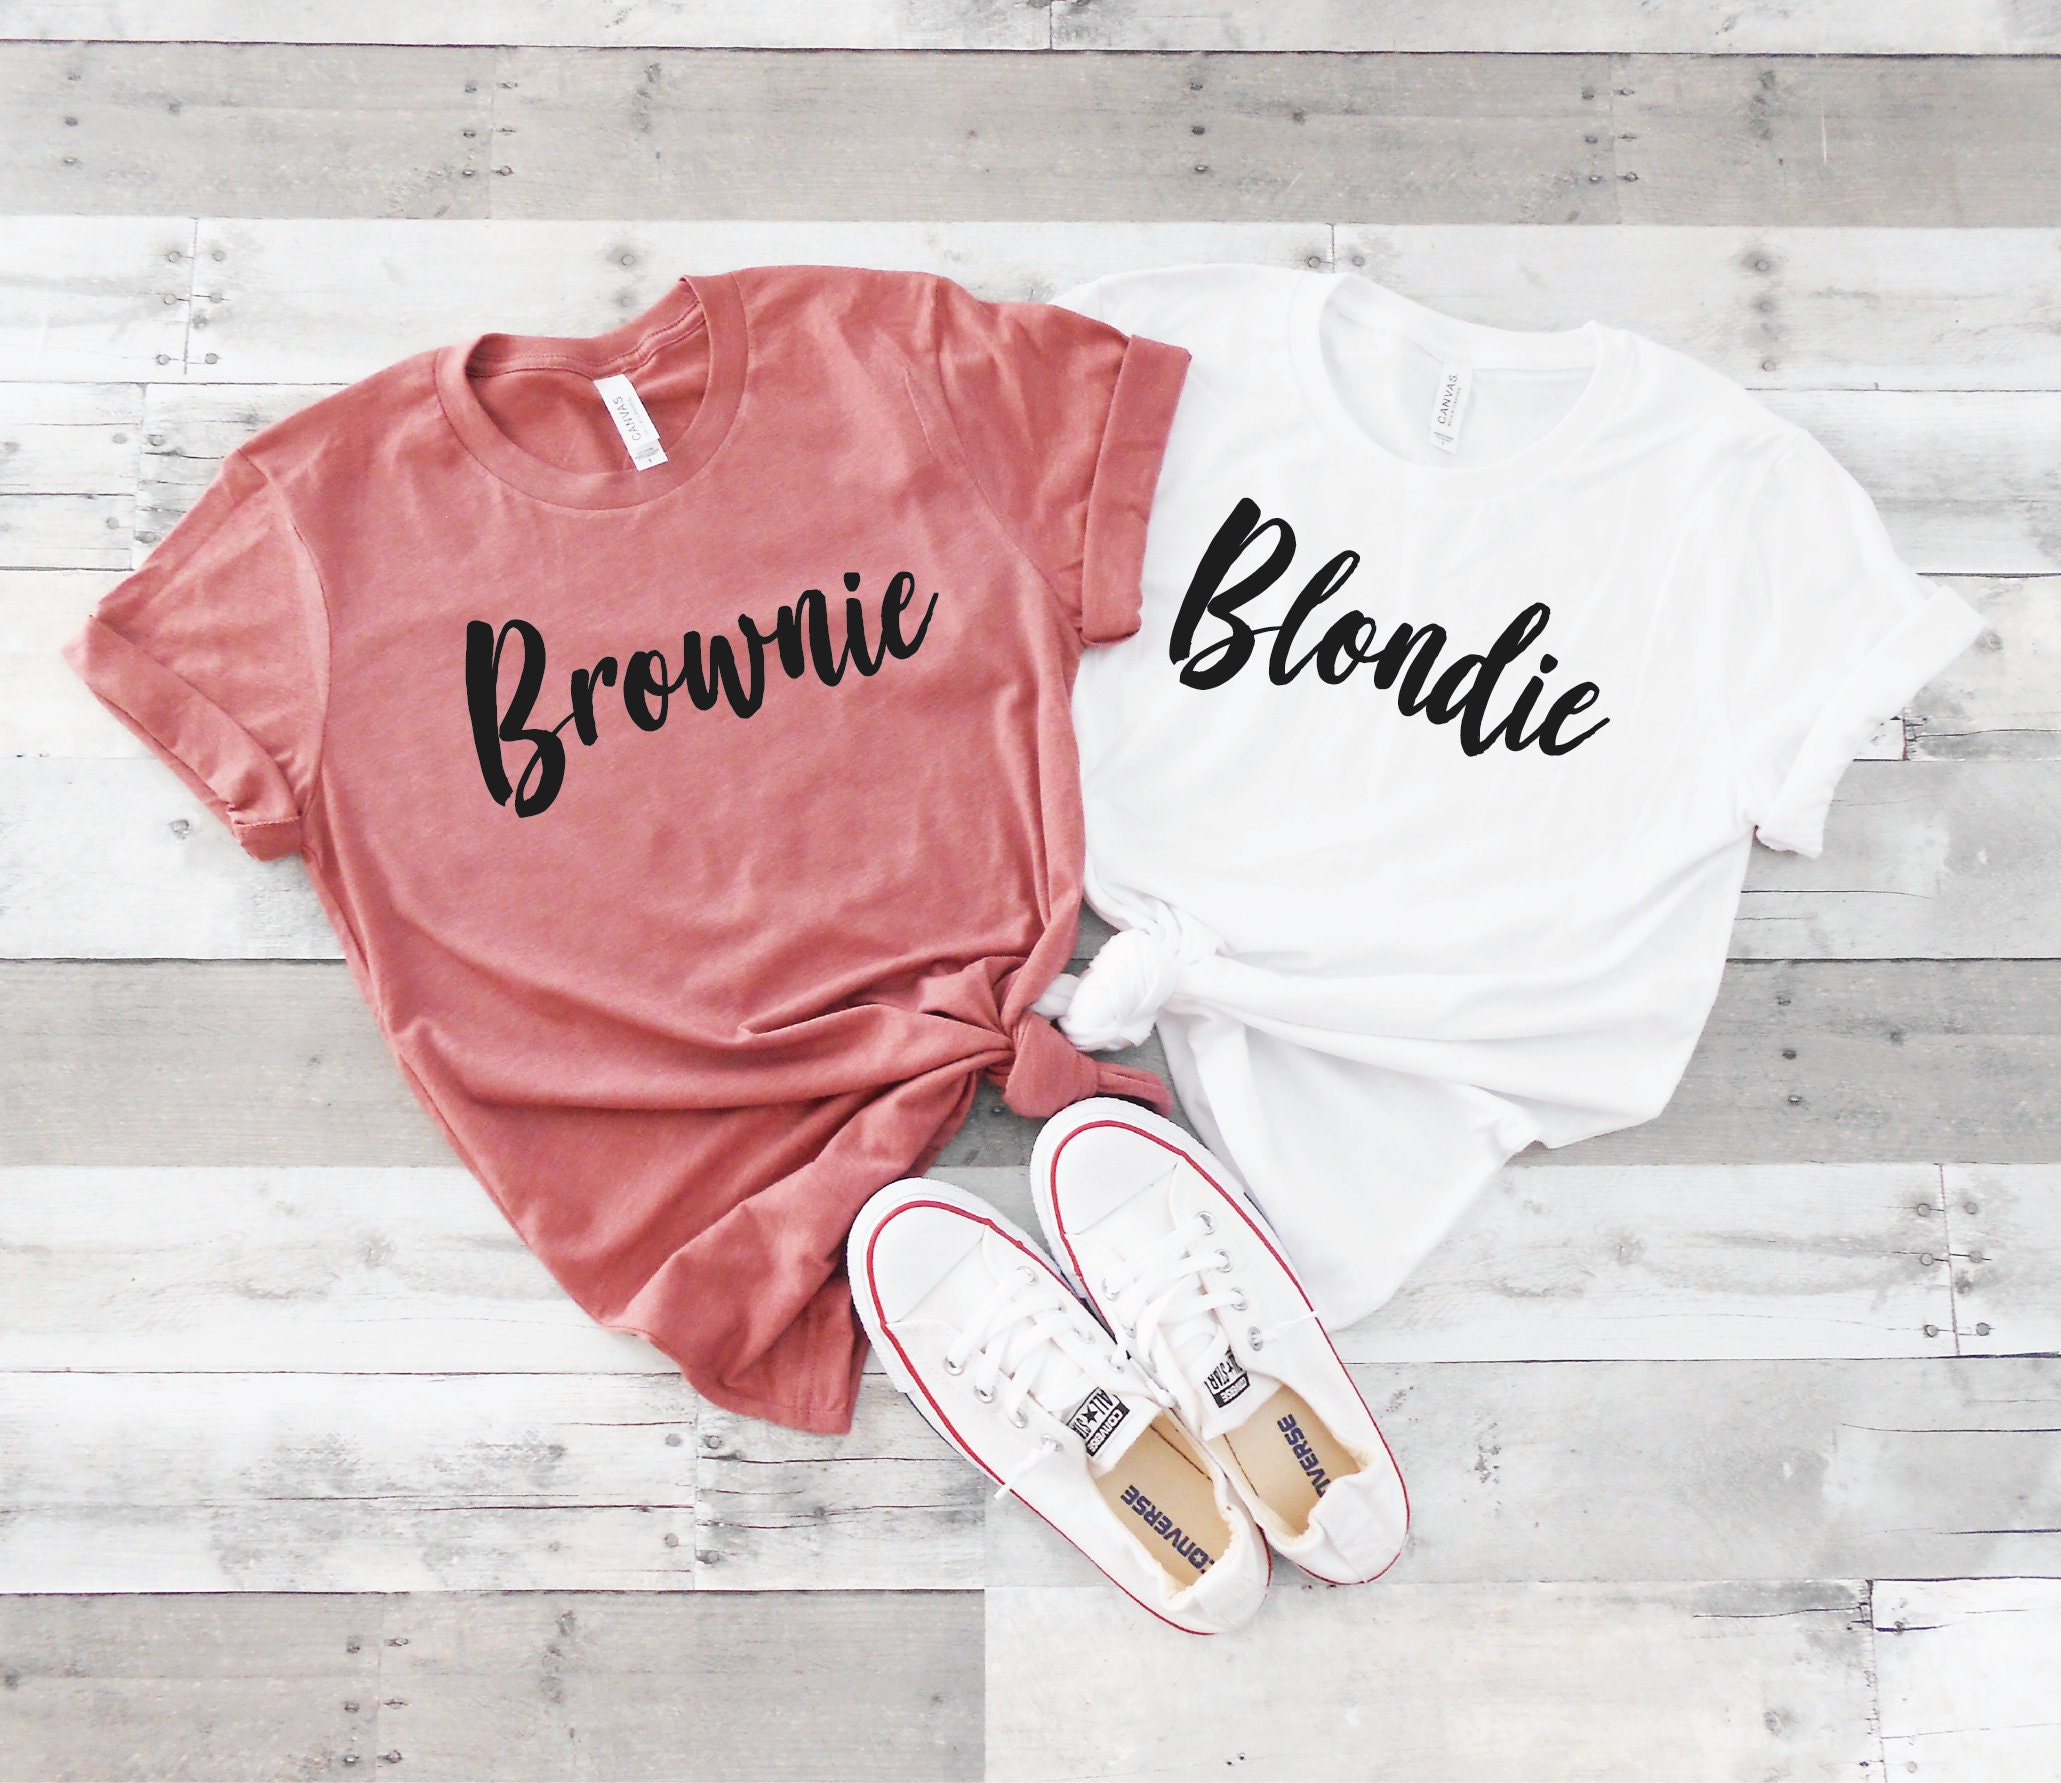 Blondie and Brownie Shirts Blondie Shirt / Brownie / - Etsy